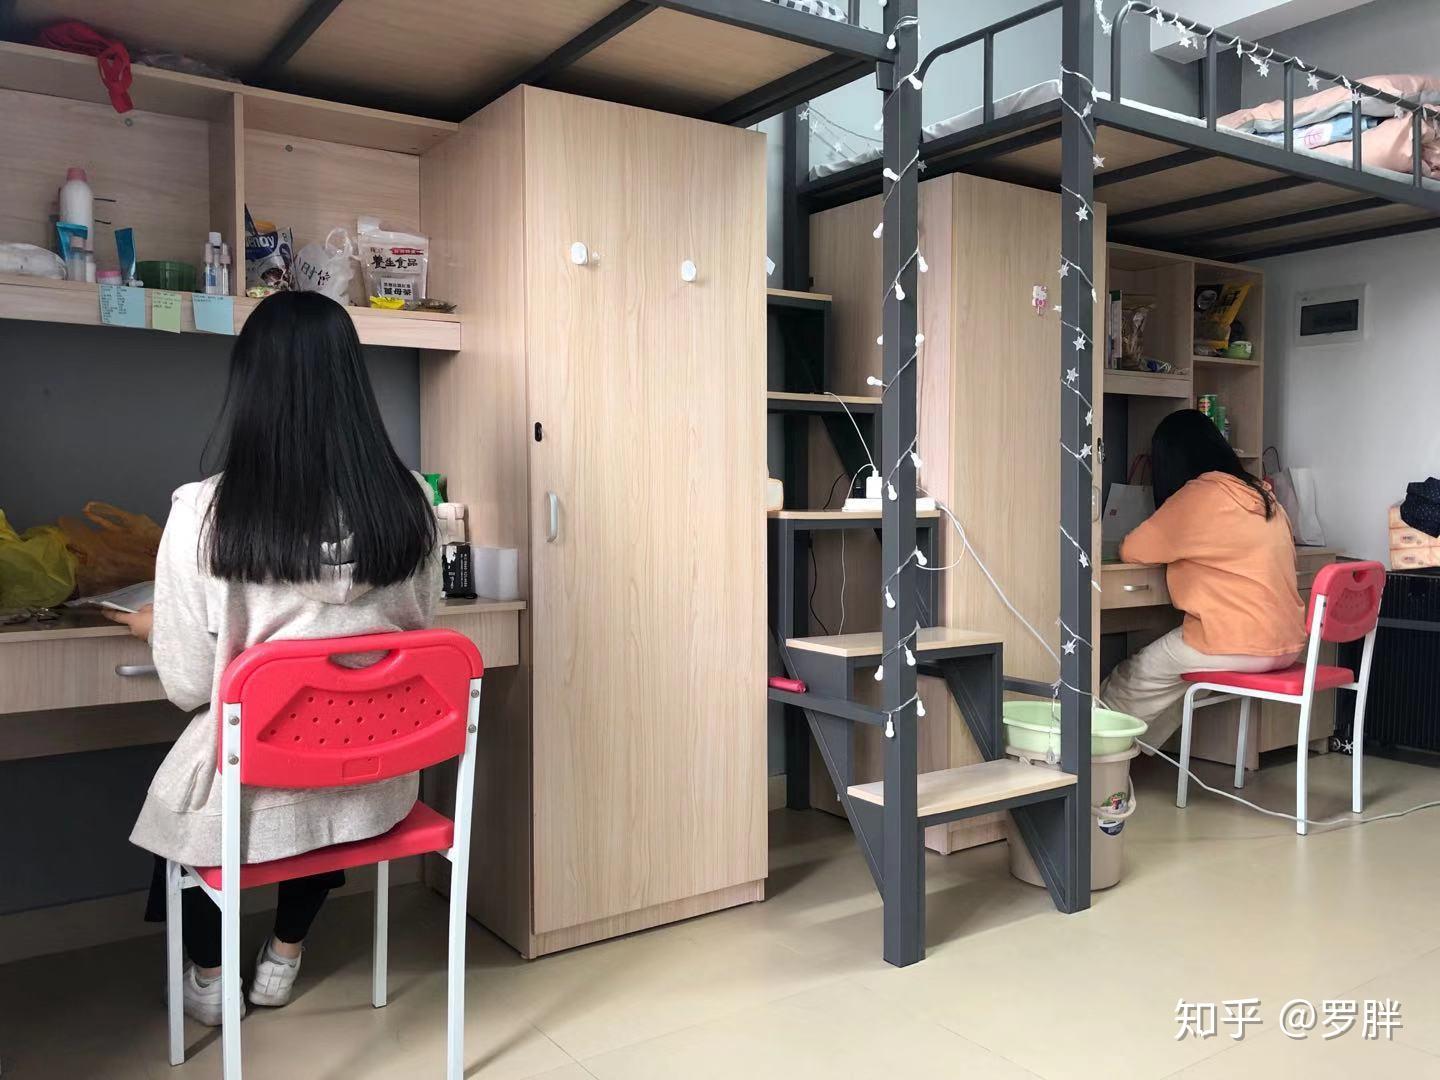 广东酒店管理职业技术学院环境如何 宿舍环境如何师资如何 学校乱花钱